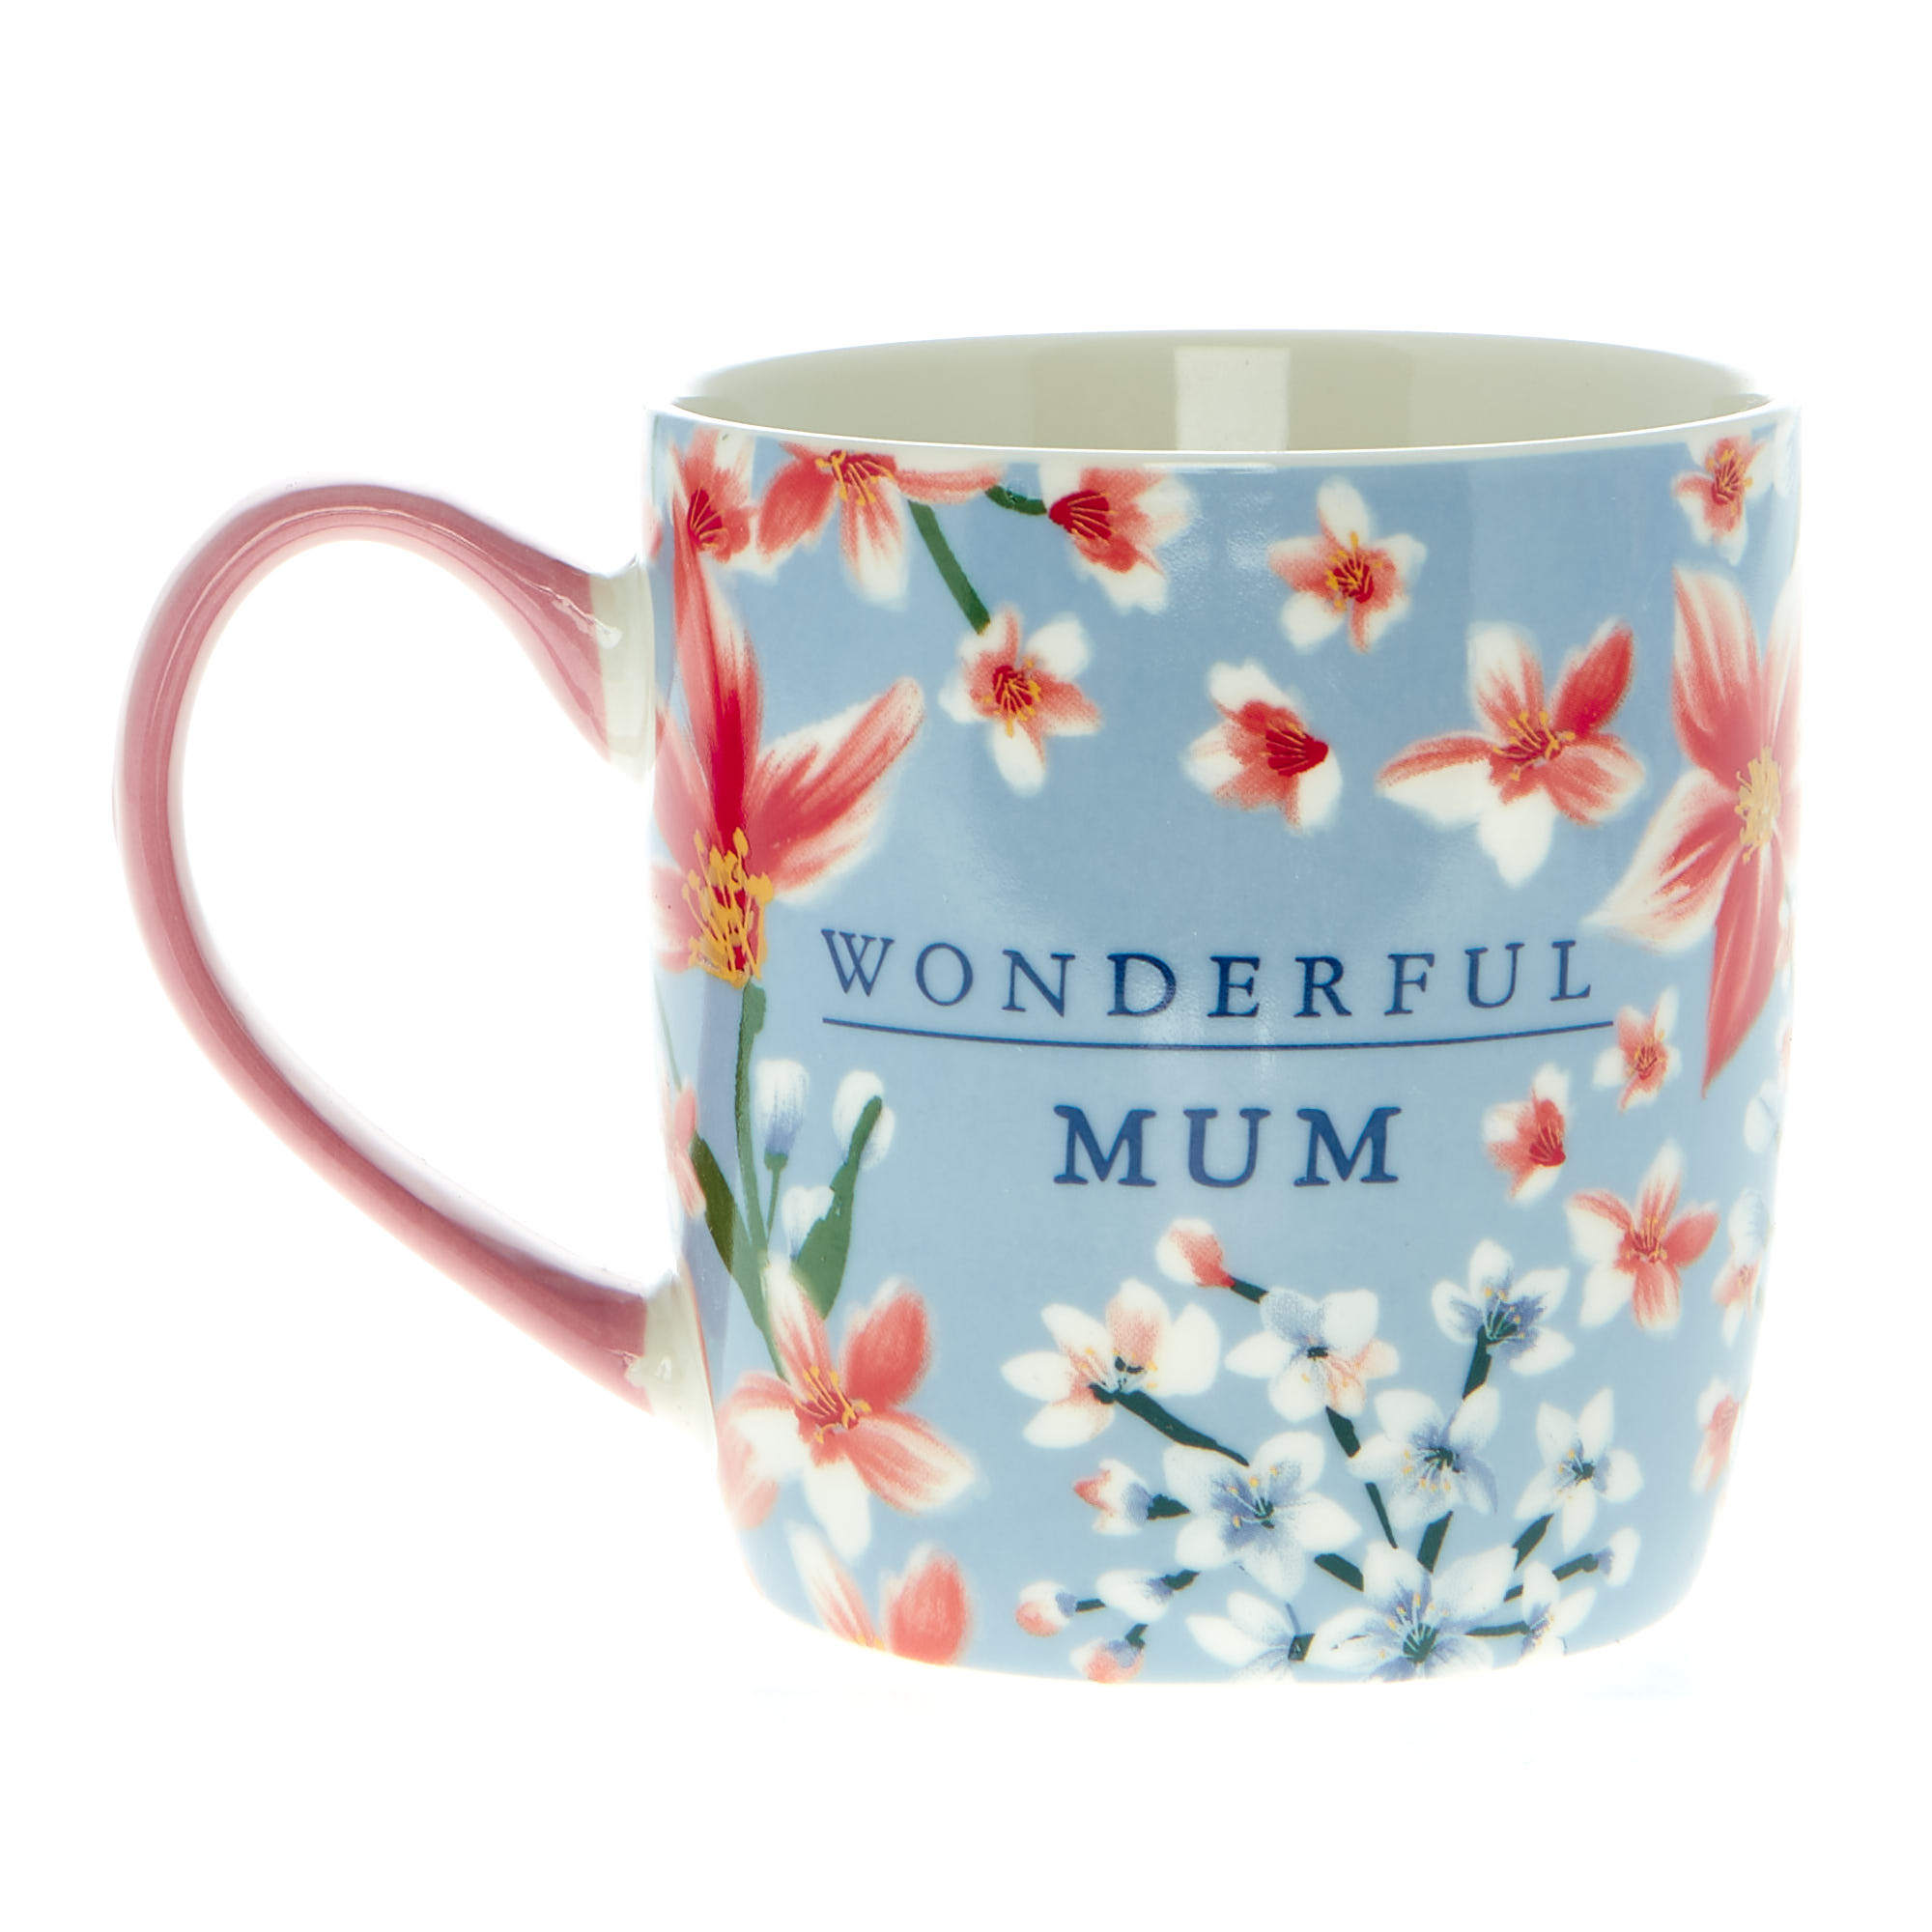 Wonderful Mum Mug 